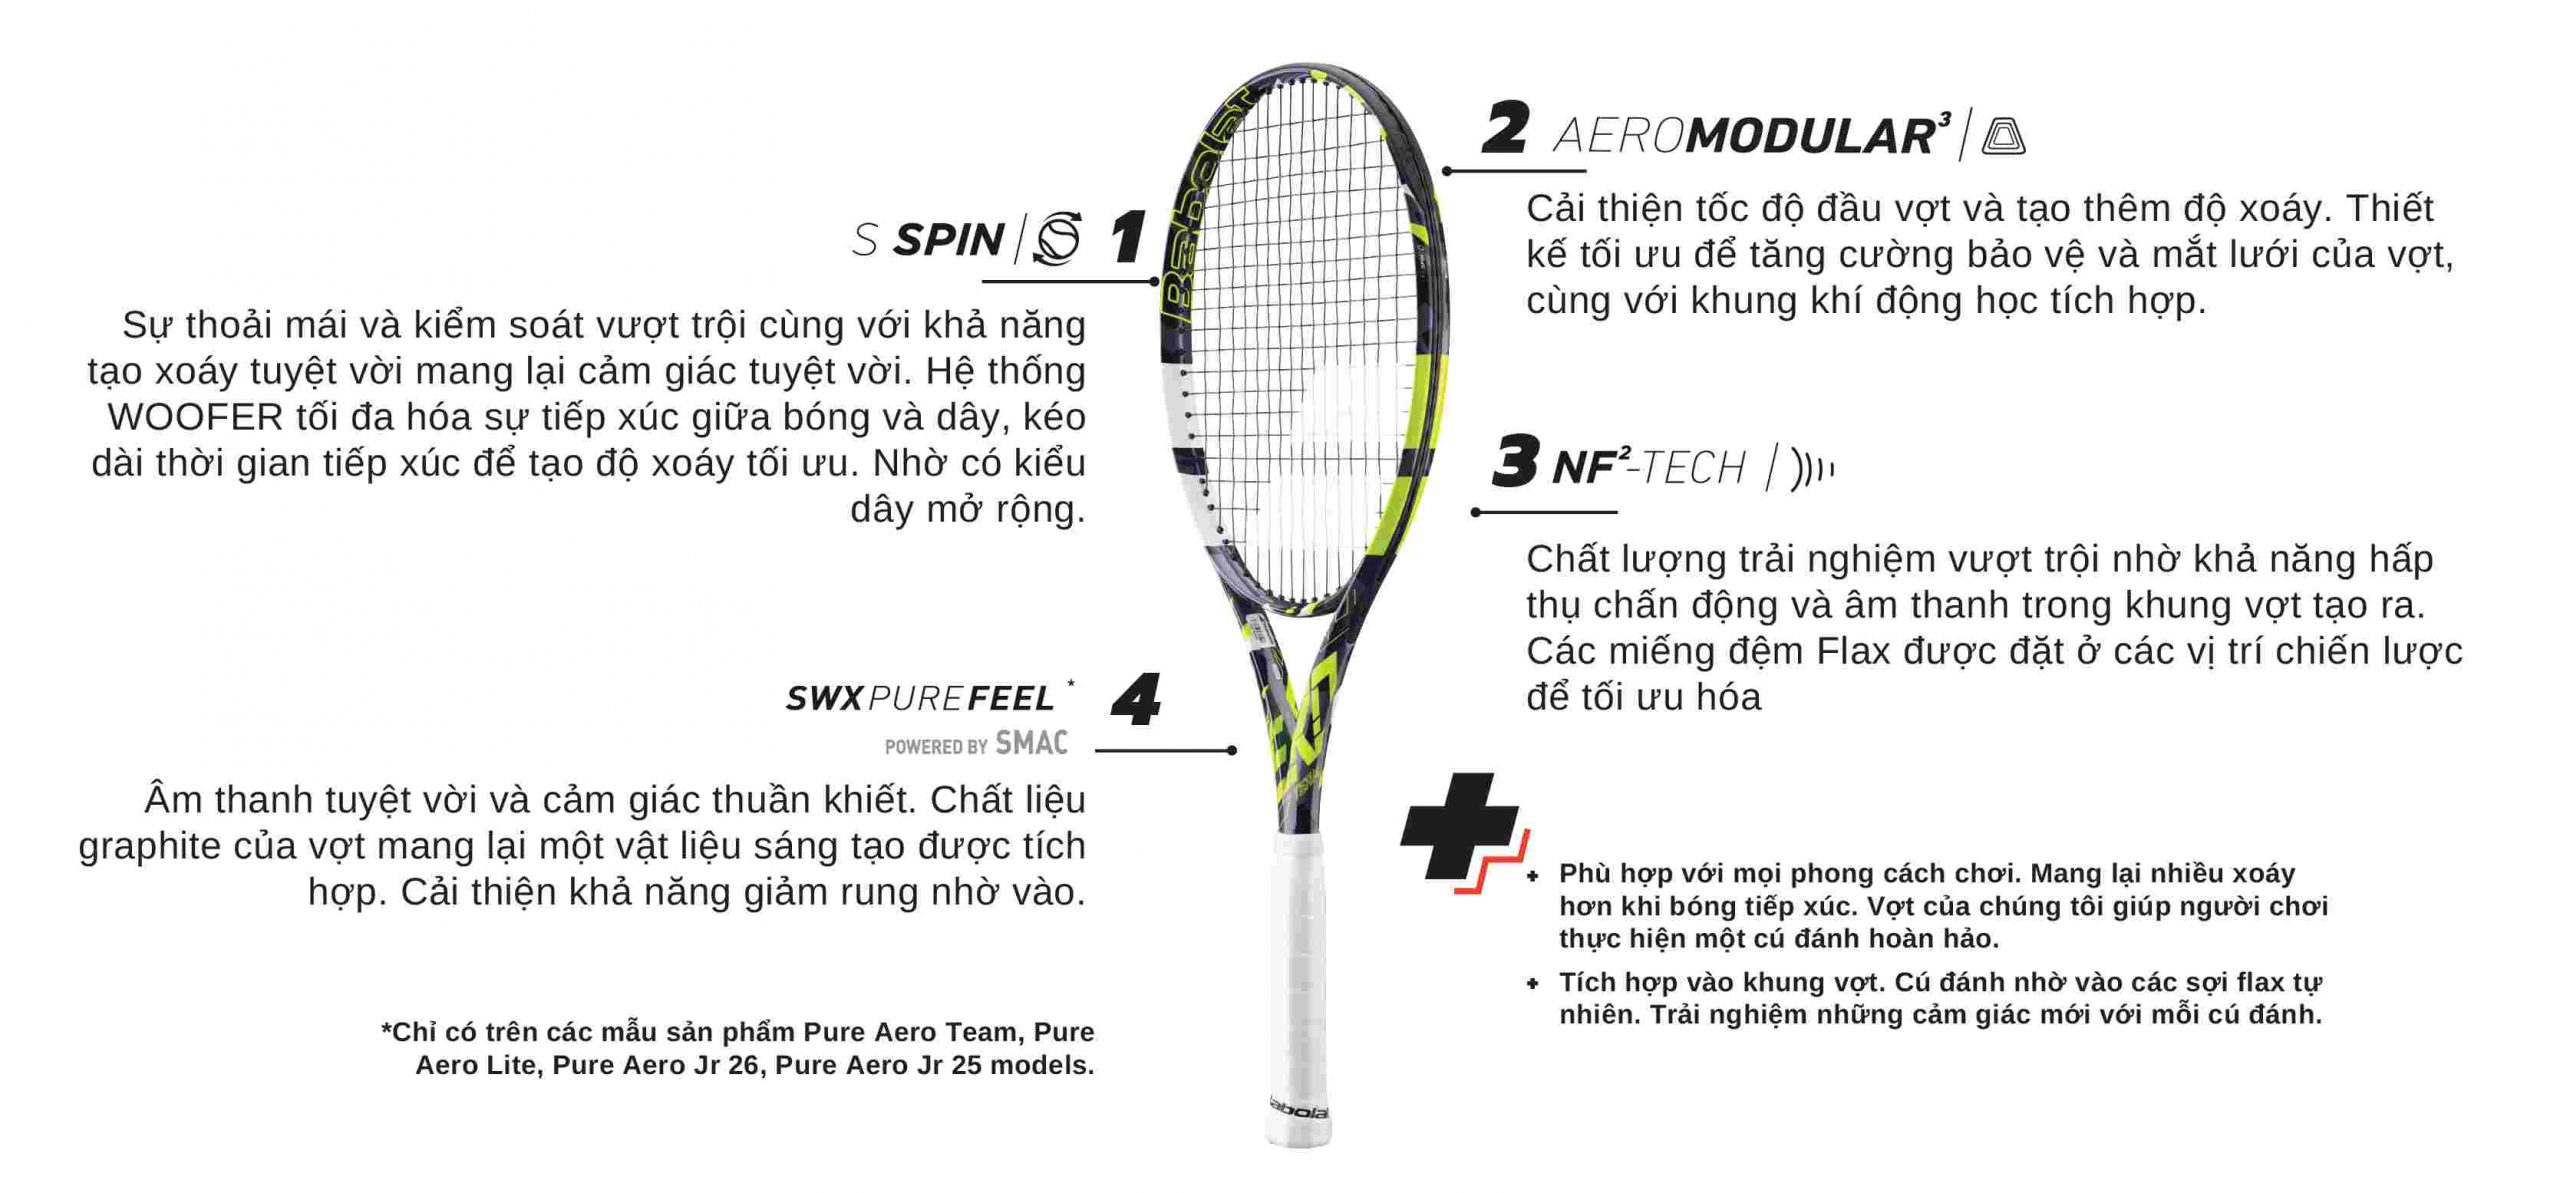 Đặc điểm của vợt Pure Aero